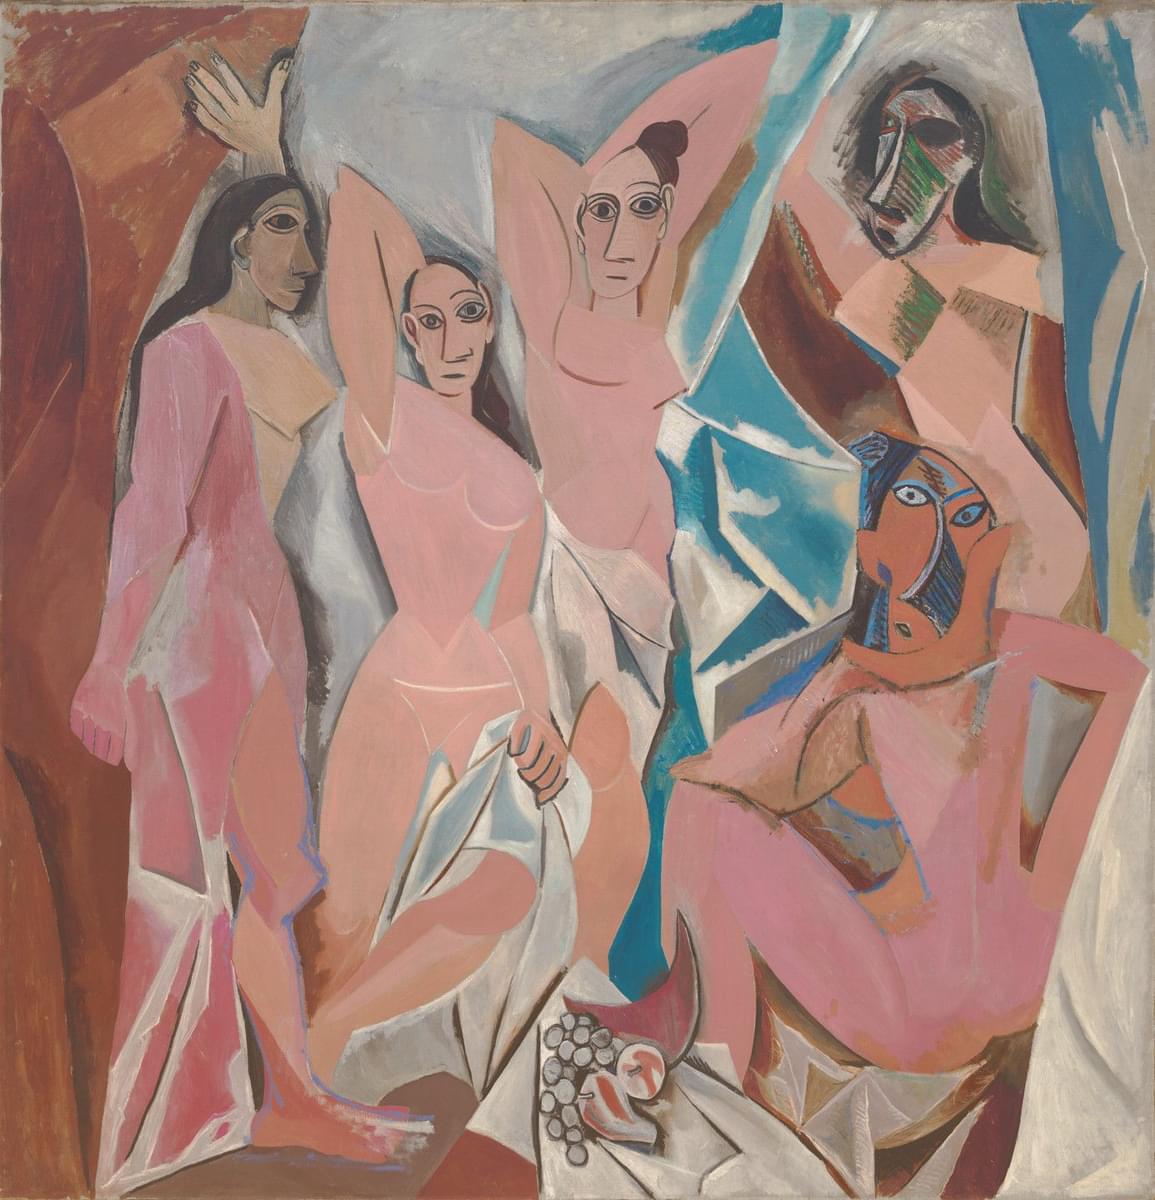 Les Demoiselles D'Avignon by Pablo Picasso